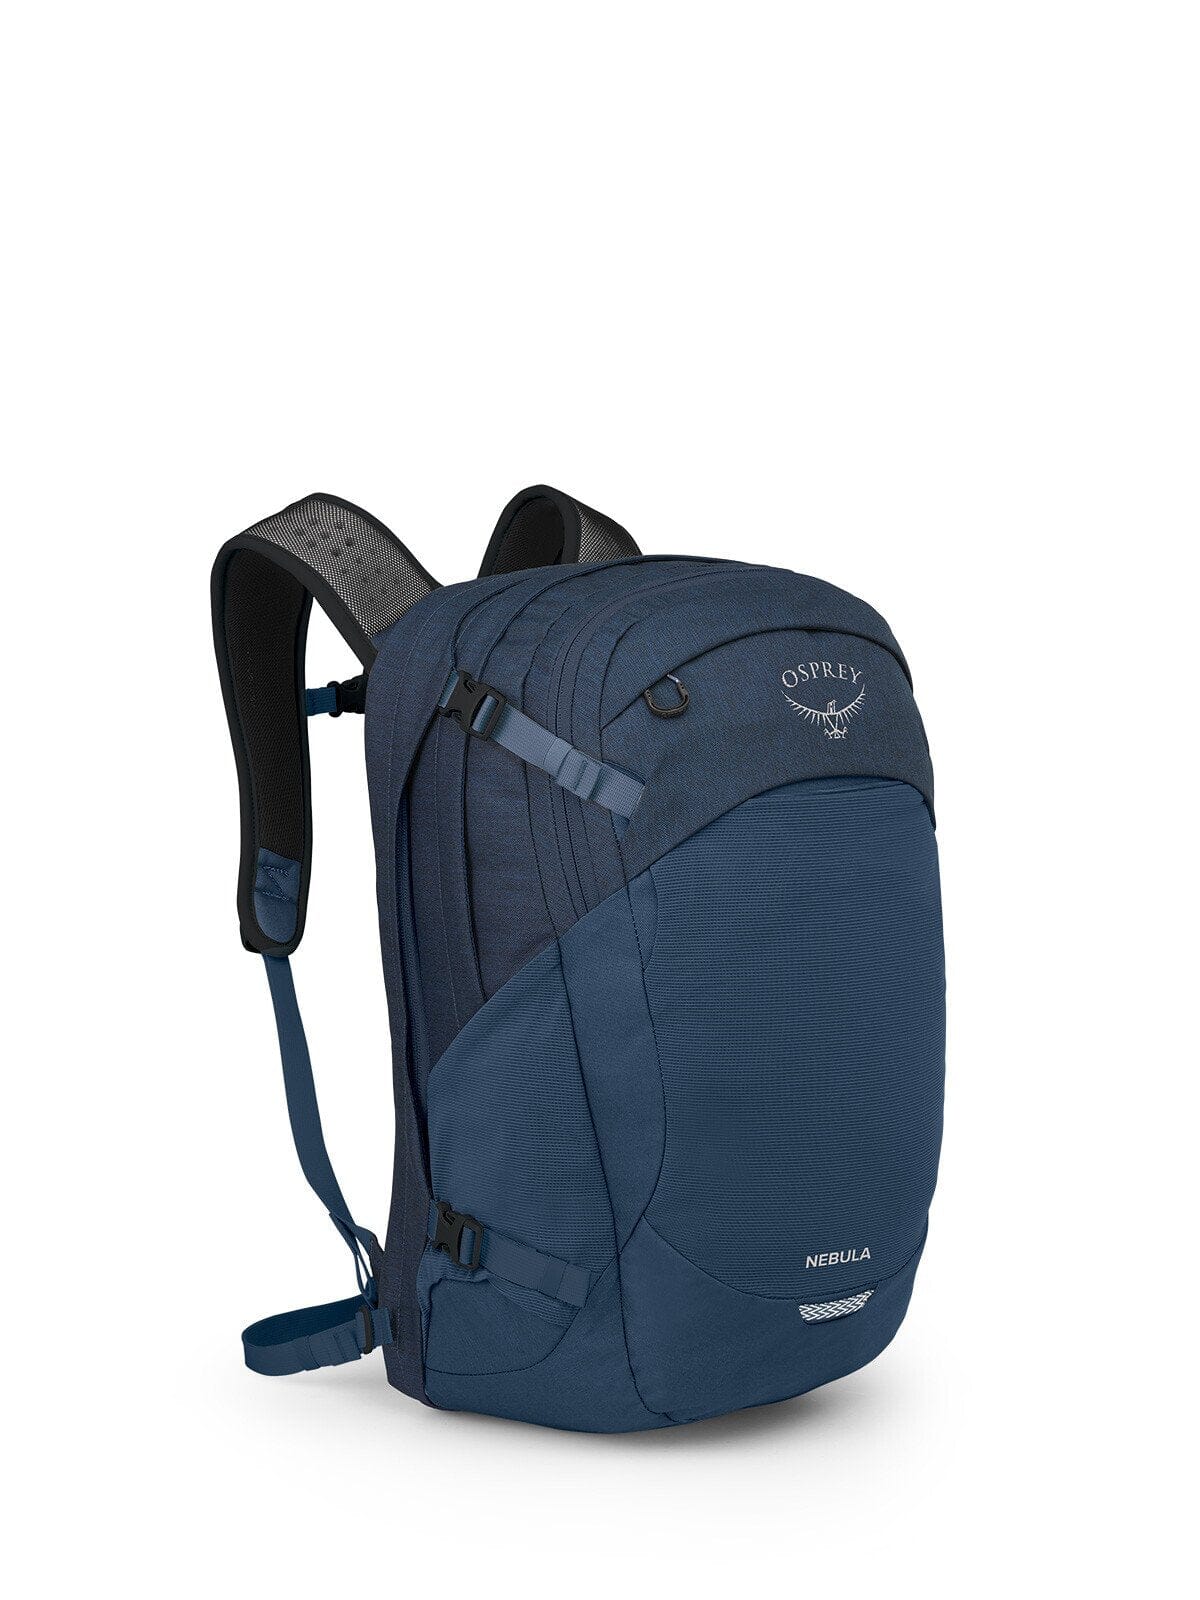 Osprey Nebula 32L Backpack ATLAS BLUE HEATHER 